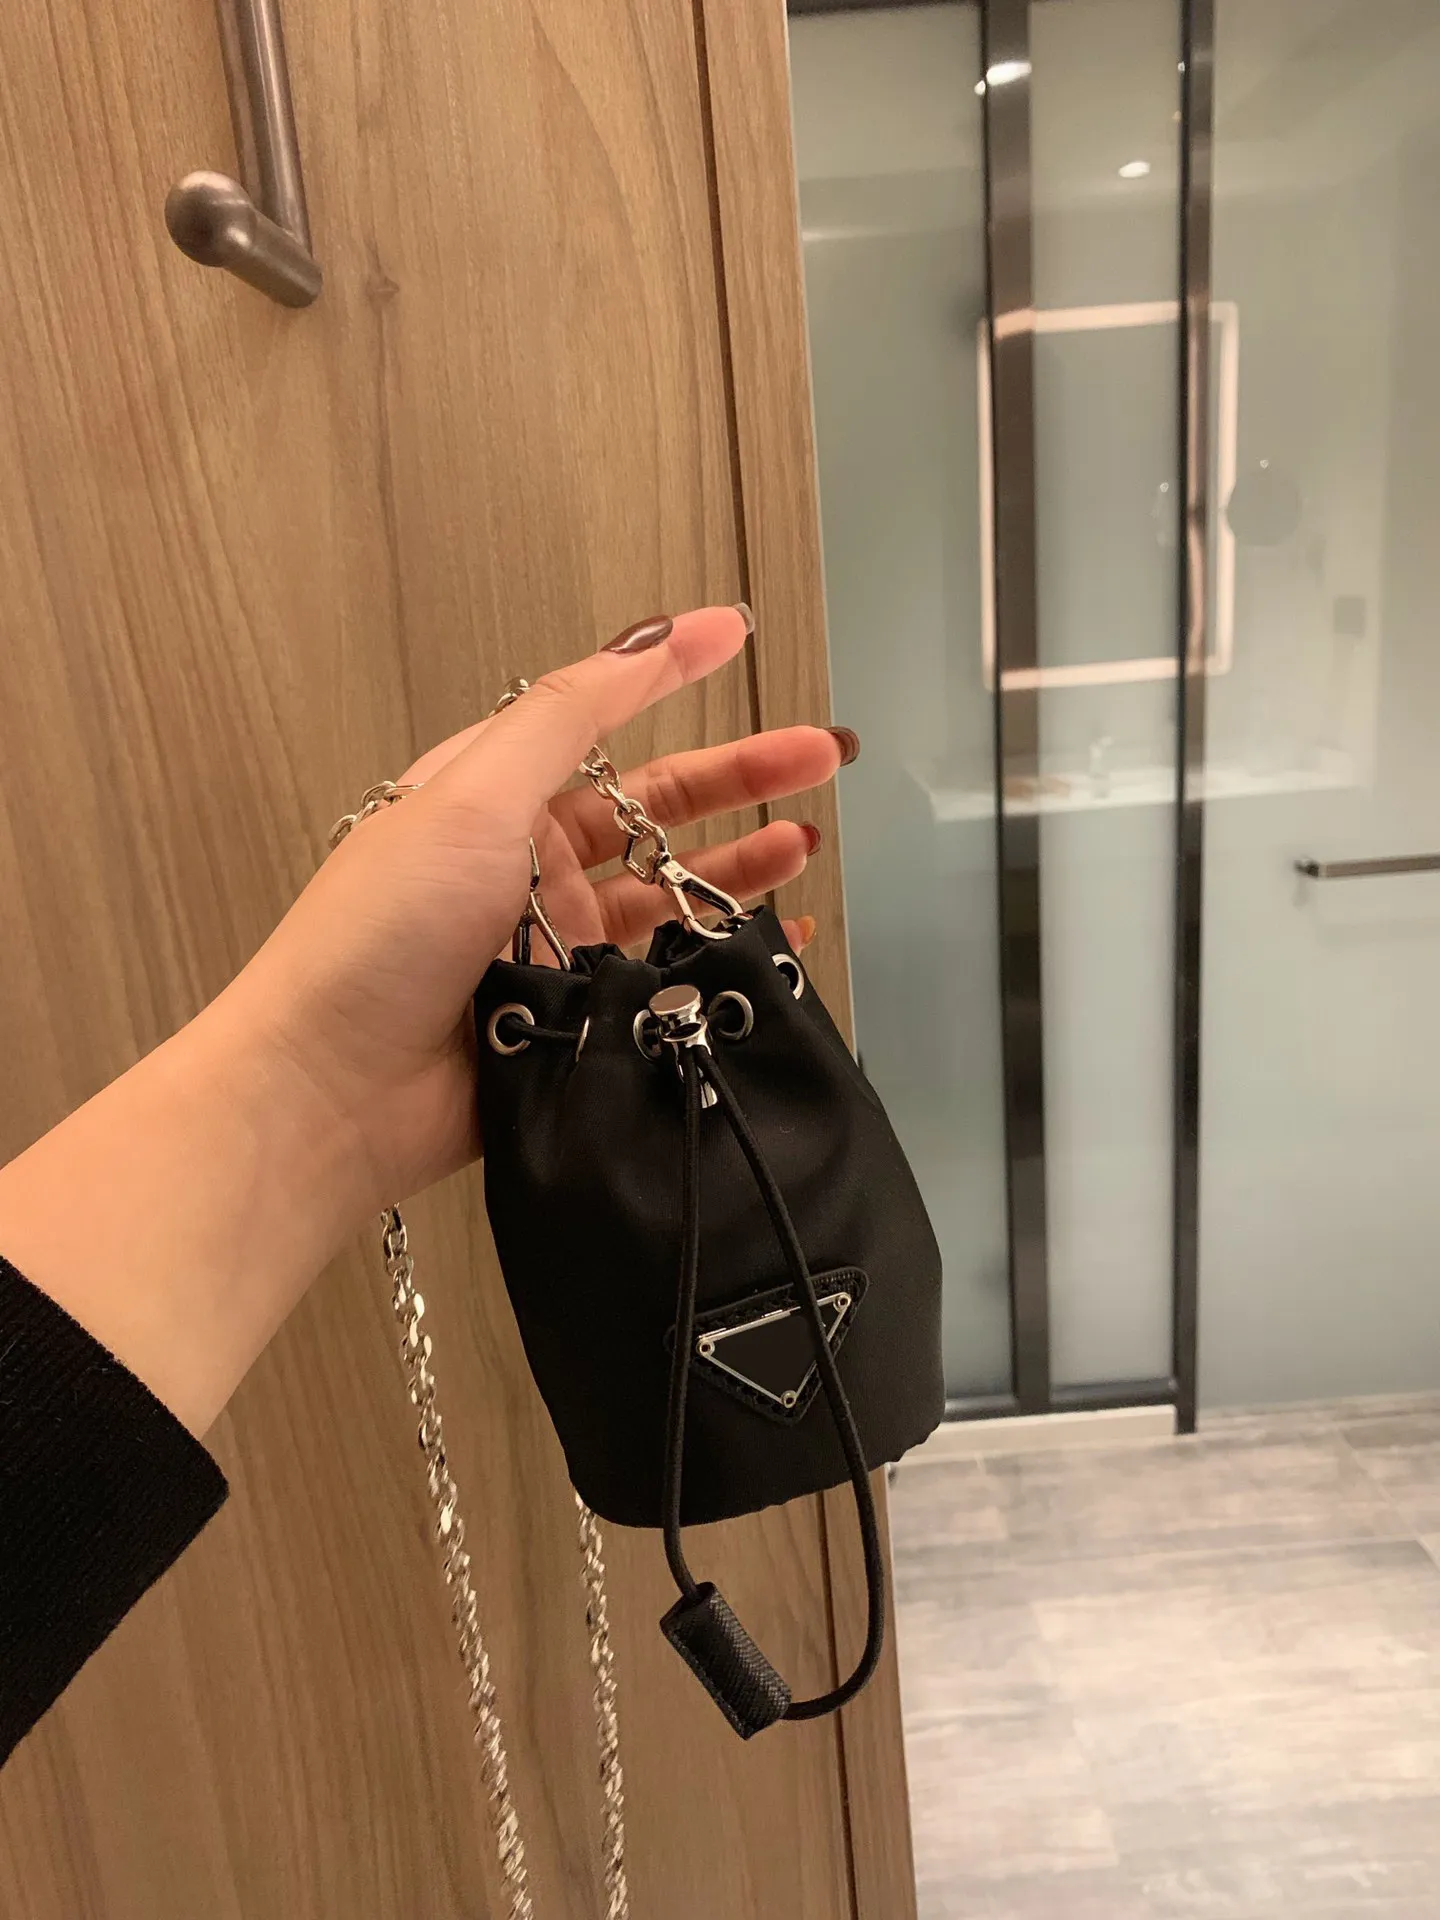 Novo porta-chaves feminino de luxo, bolsa para celular, barra transversal, mini bolsa, alça de ombro, corrente longa, bolsa mensageiro, clássica, com cordão